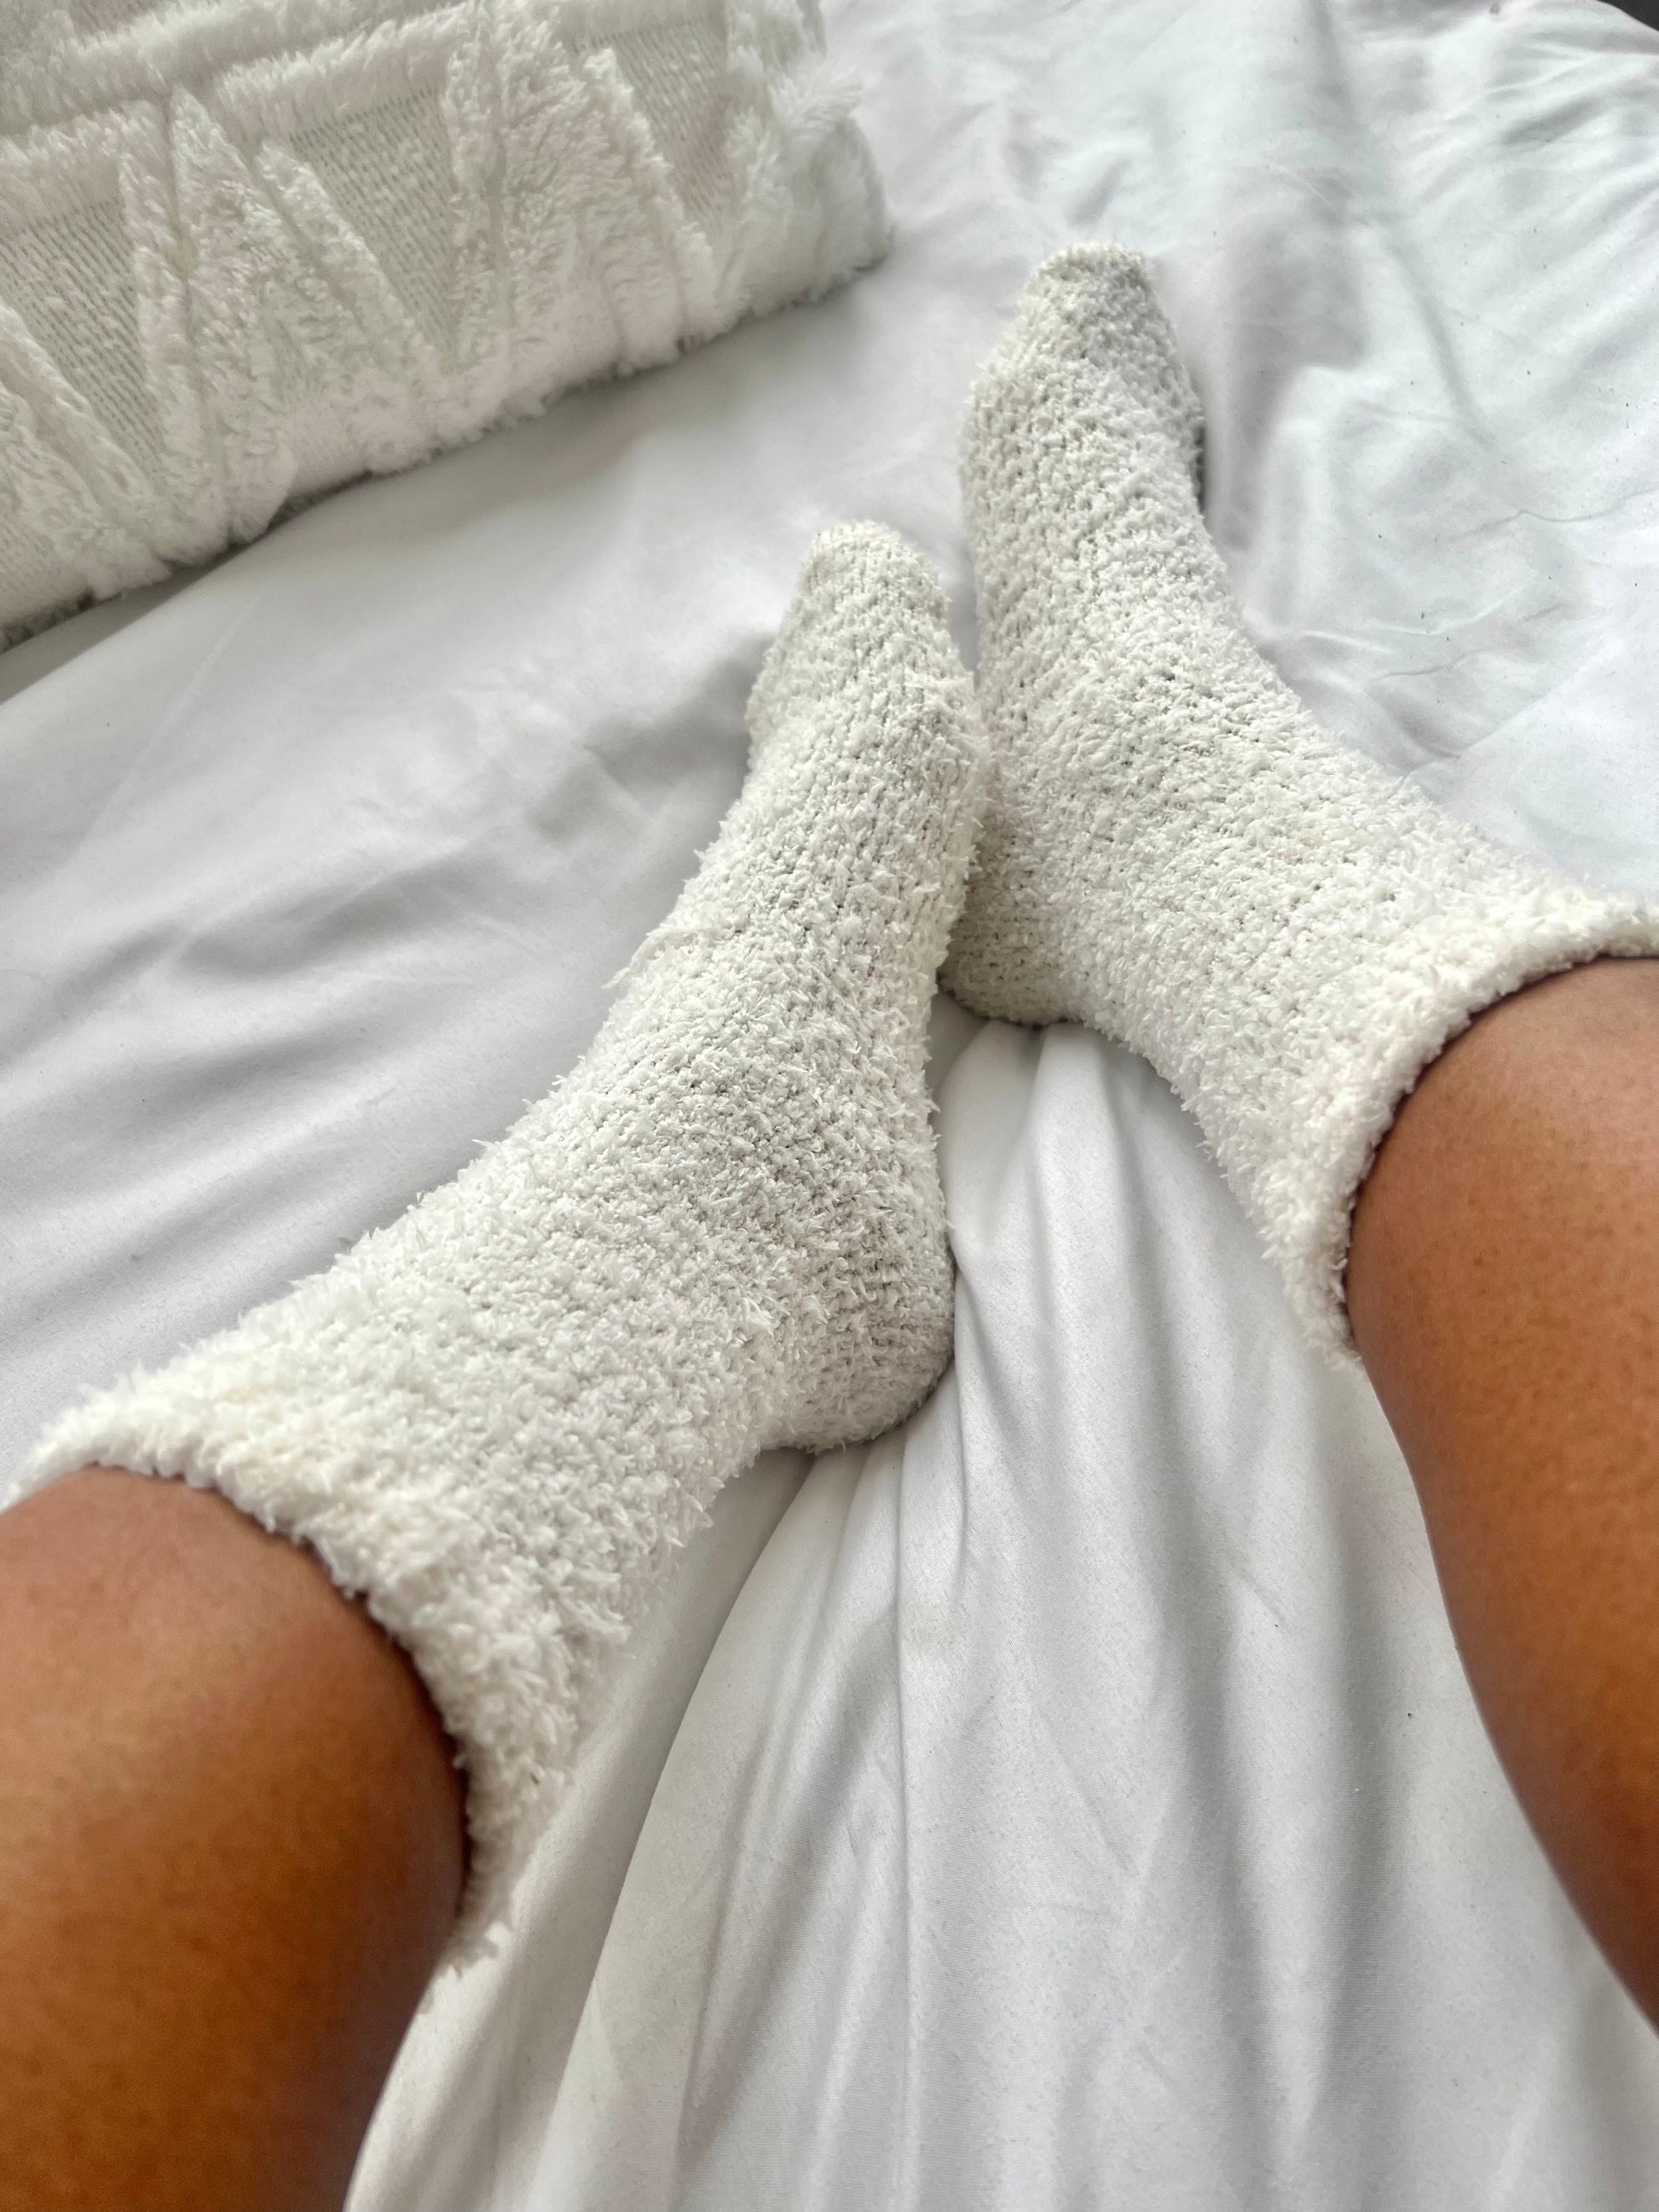 White Fuzzy Socks